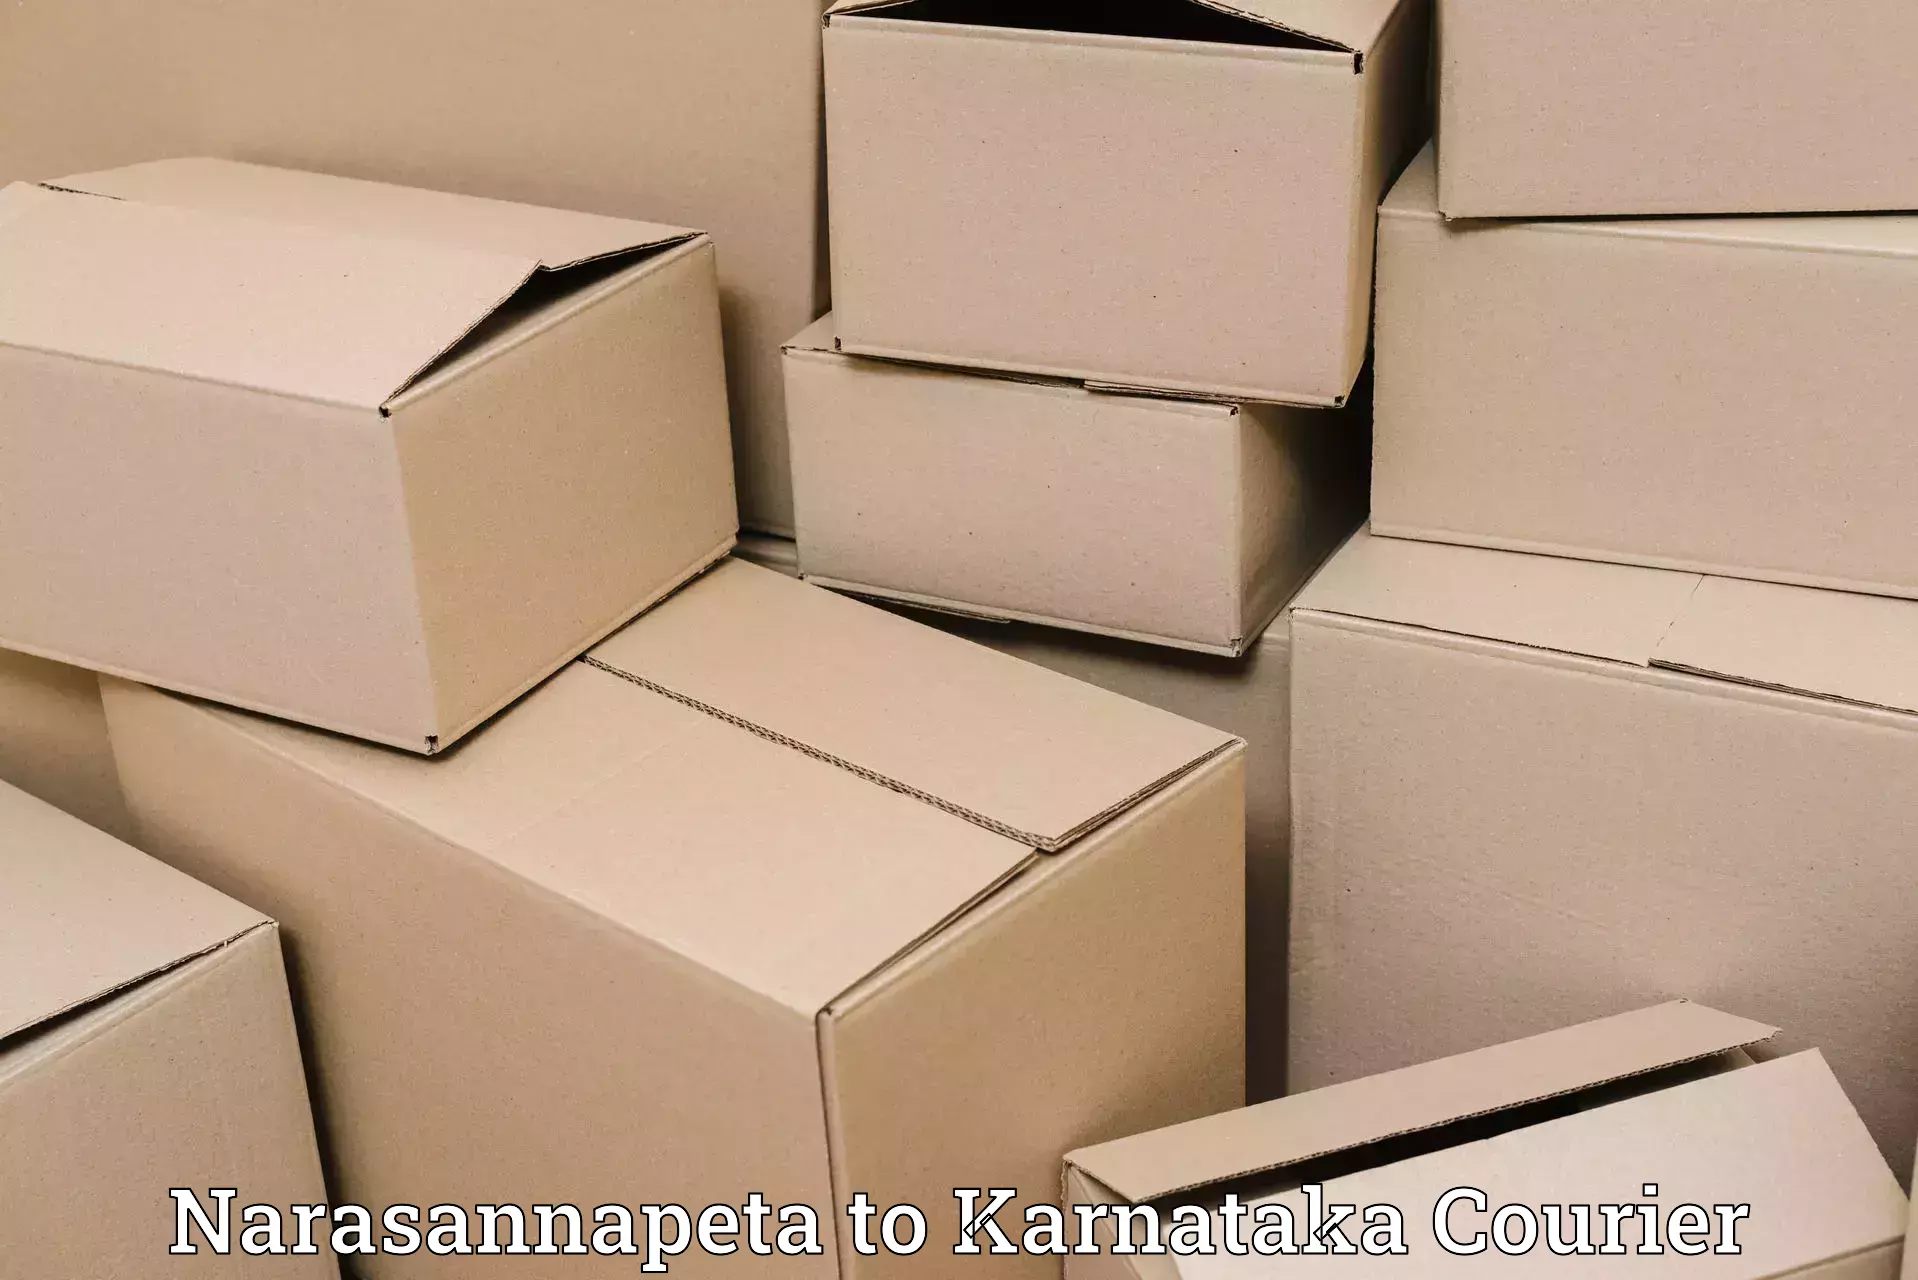 Customer-centric shipping in Narasannapeta to Gulbarga